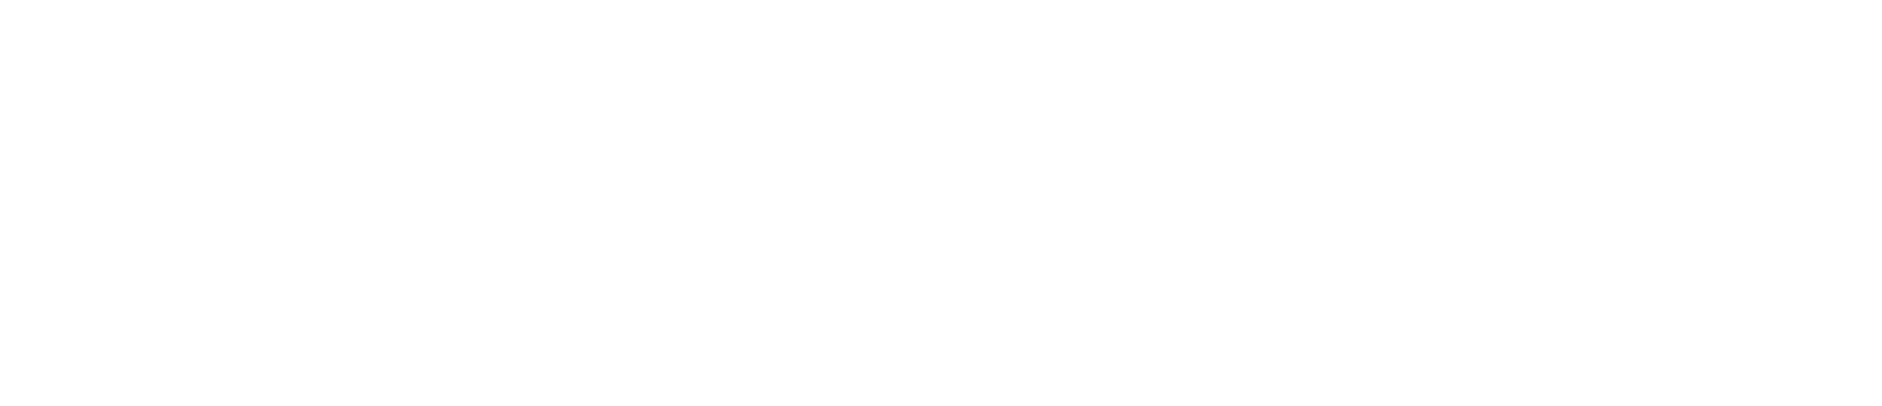 Corvias footer logo